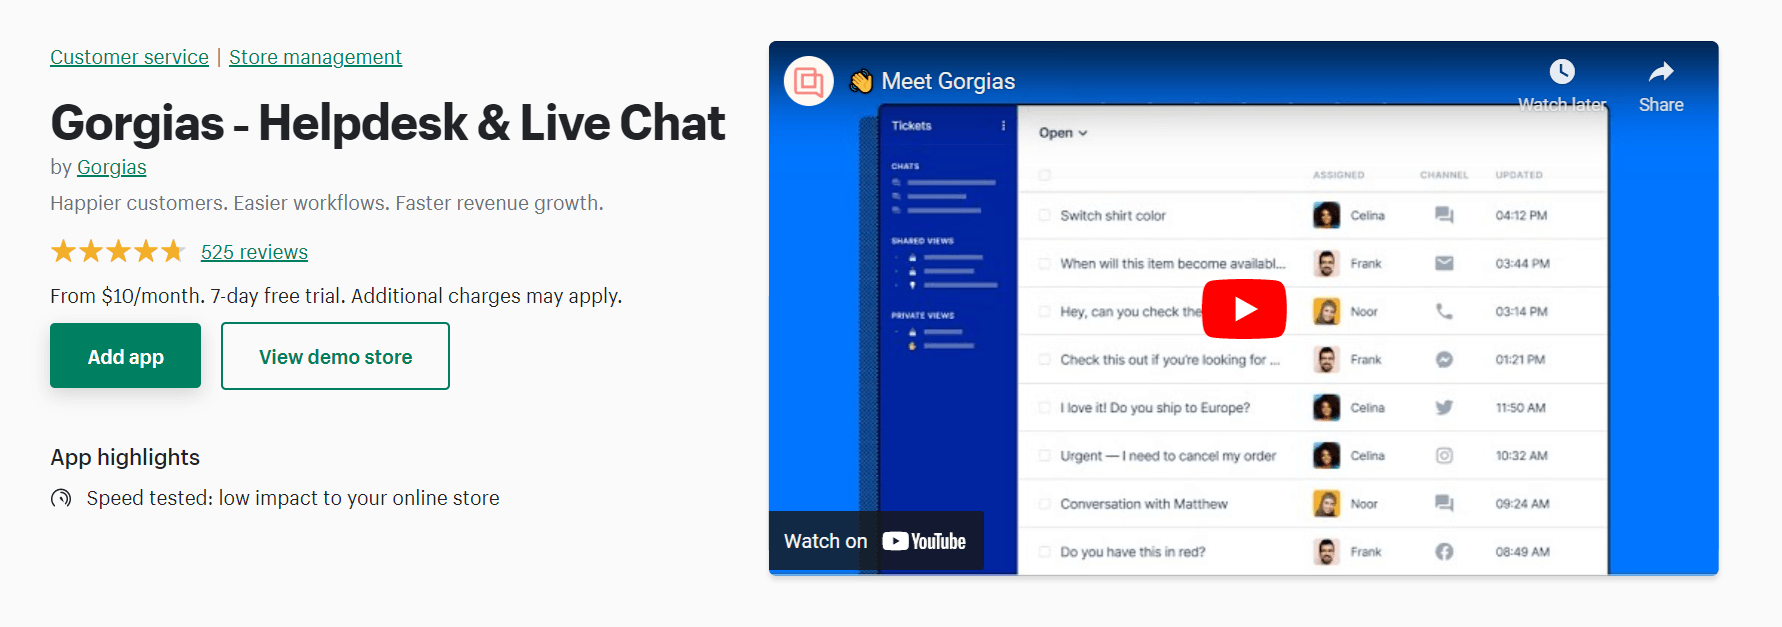 Gorgias helpdesk and live chat app